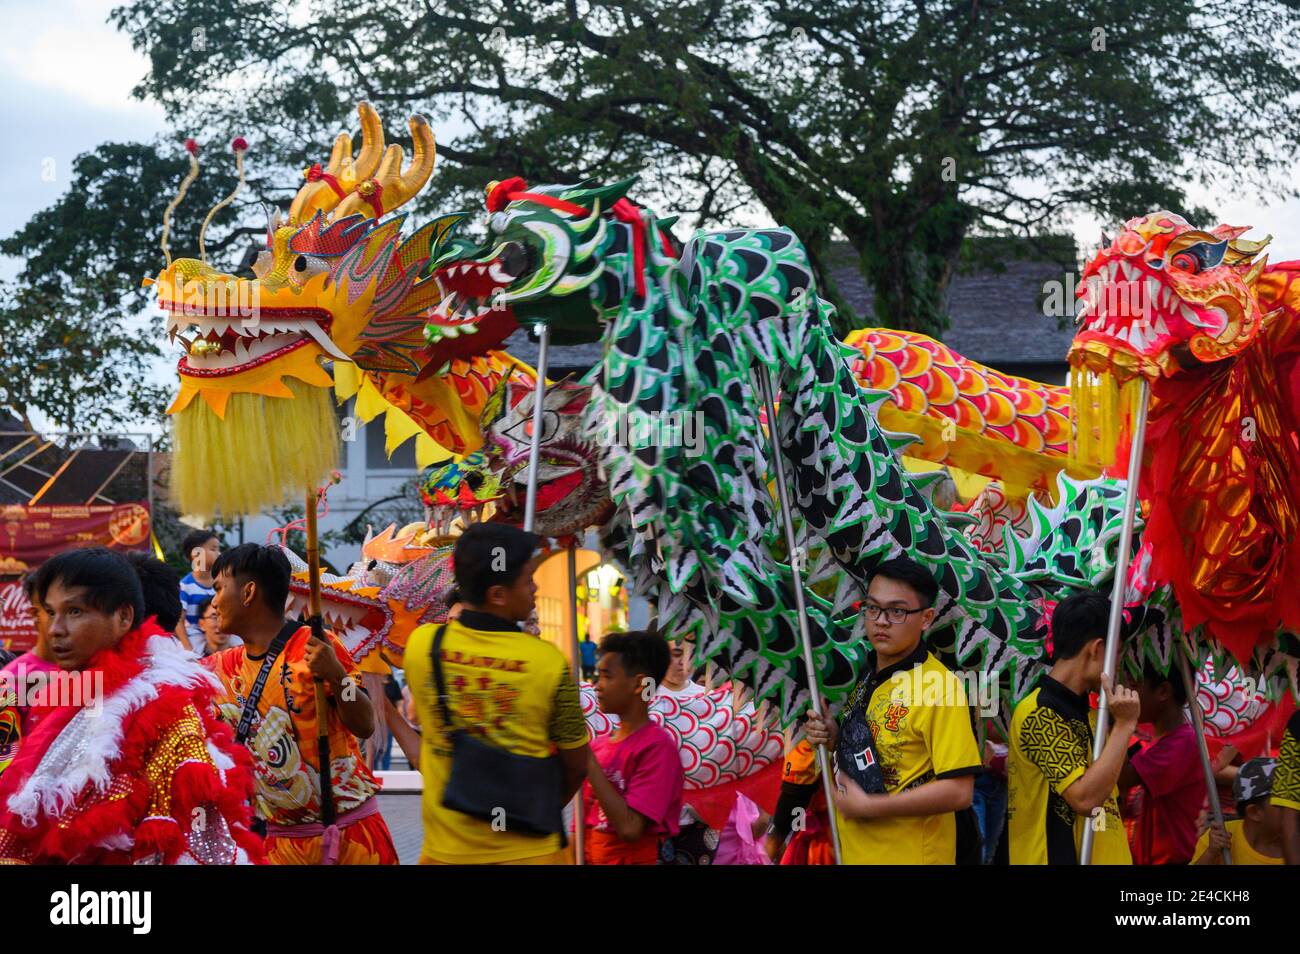 Bunte Drachenköpfe bei der chinesischen Neujahrsparade in Kuching, Malaysia Stockfoto